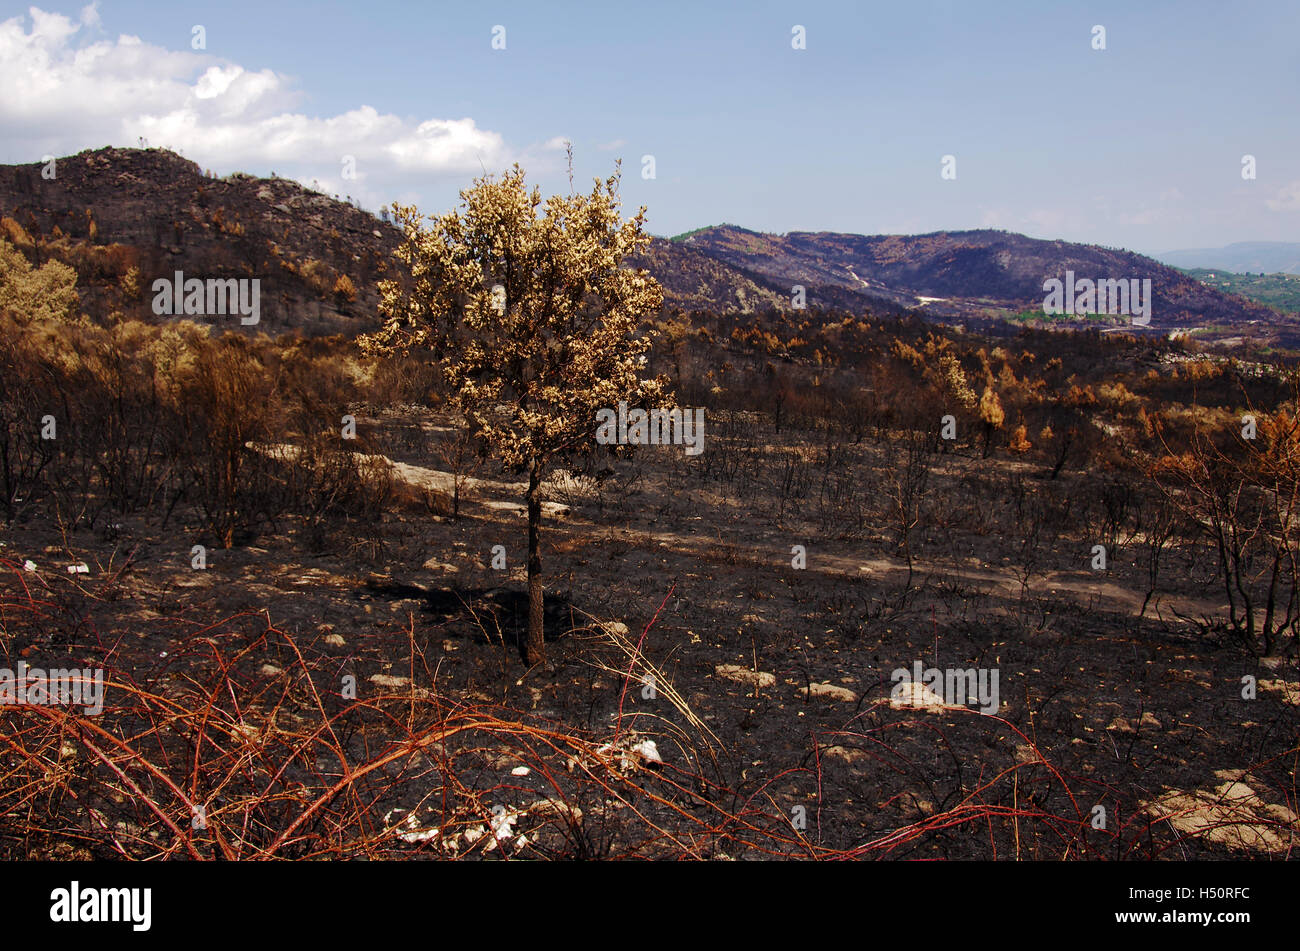 Vista espectacular de tierra quemada después de un incendio forestal en las colinas Foto de stock